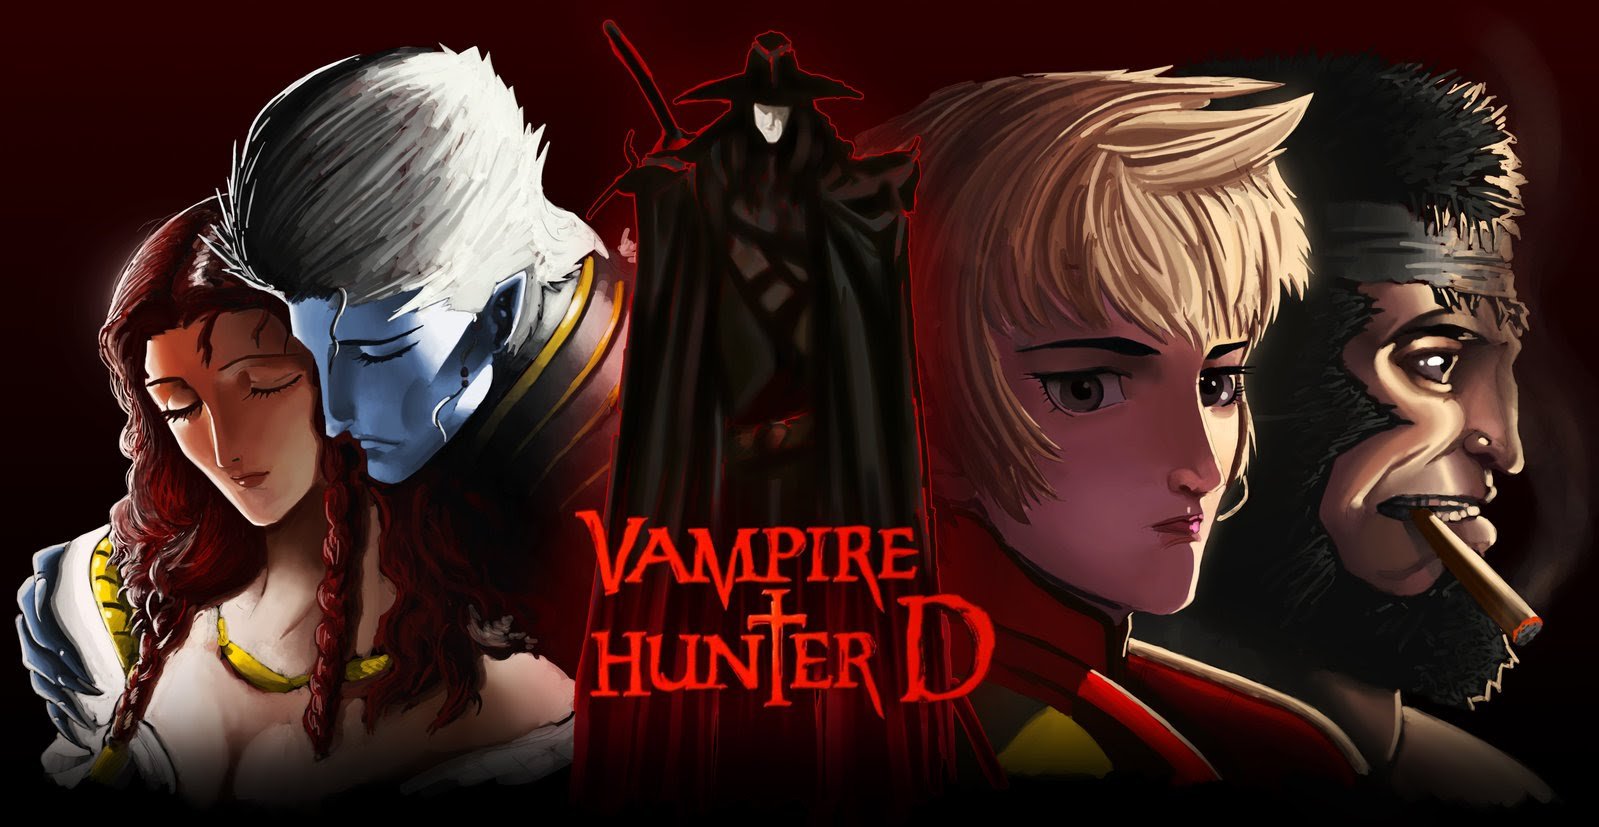 مزيد من المعلومات حول "Vampire Hunter D Bloodlust 2000  فيلم الانيميشن الاكشن والرعب"